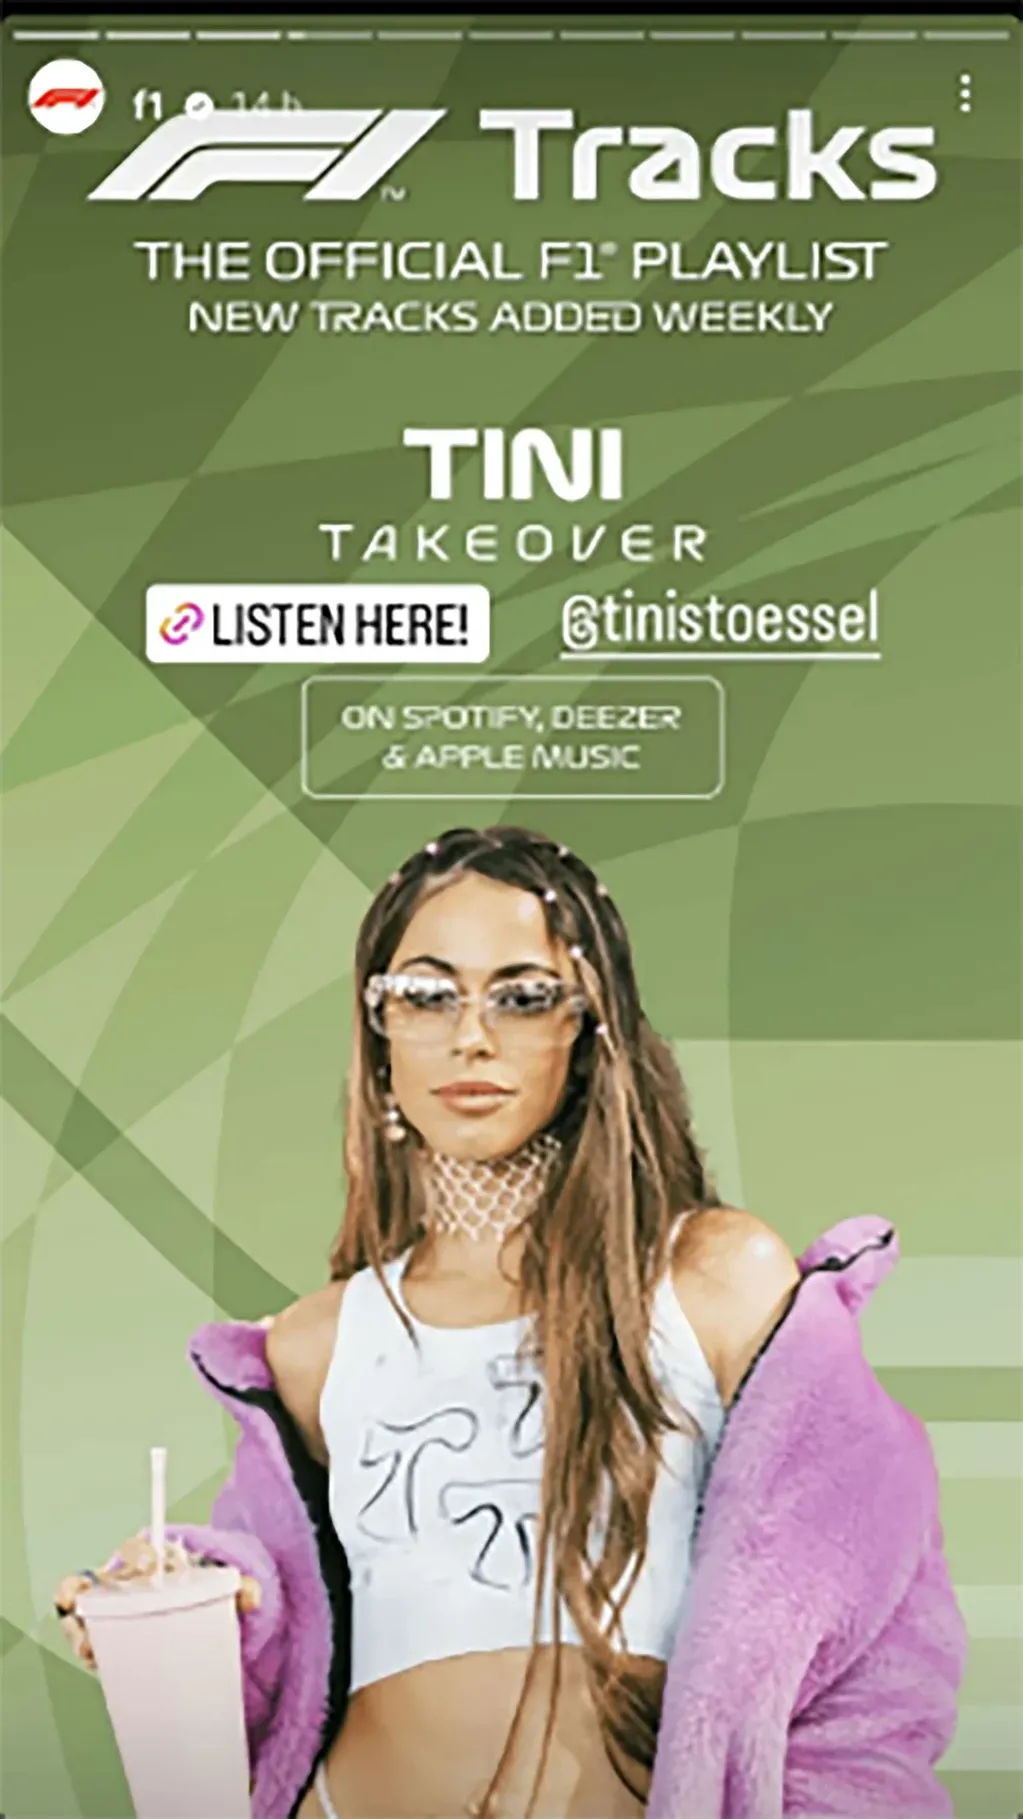 Tini Stoessel